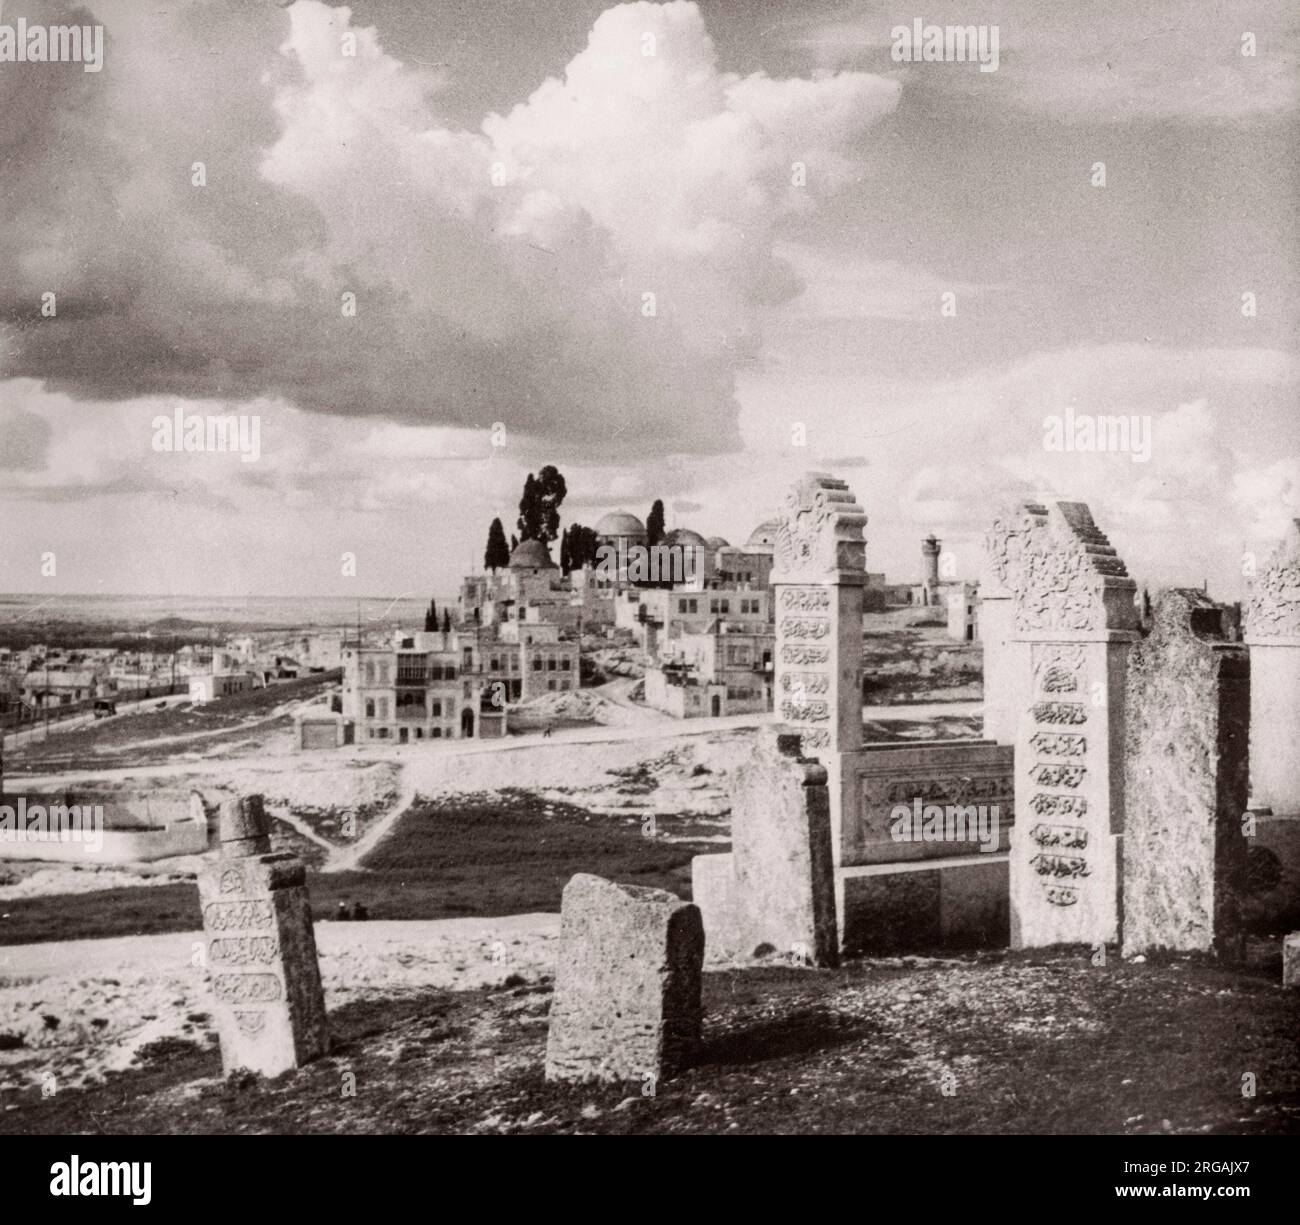 1943 Moyen-Orient Syrie - scène à Alep - cimetière et vue de la ville Photographie d'un officier de recrutement de l'armée britannique stationné en Afrique de l'est et au Moyen-Orient pendant la Seconde Guerre mondiale Banque D'Images